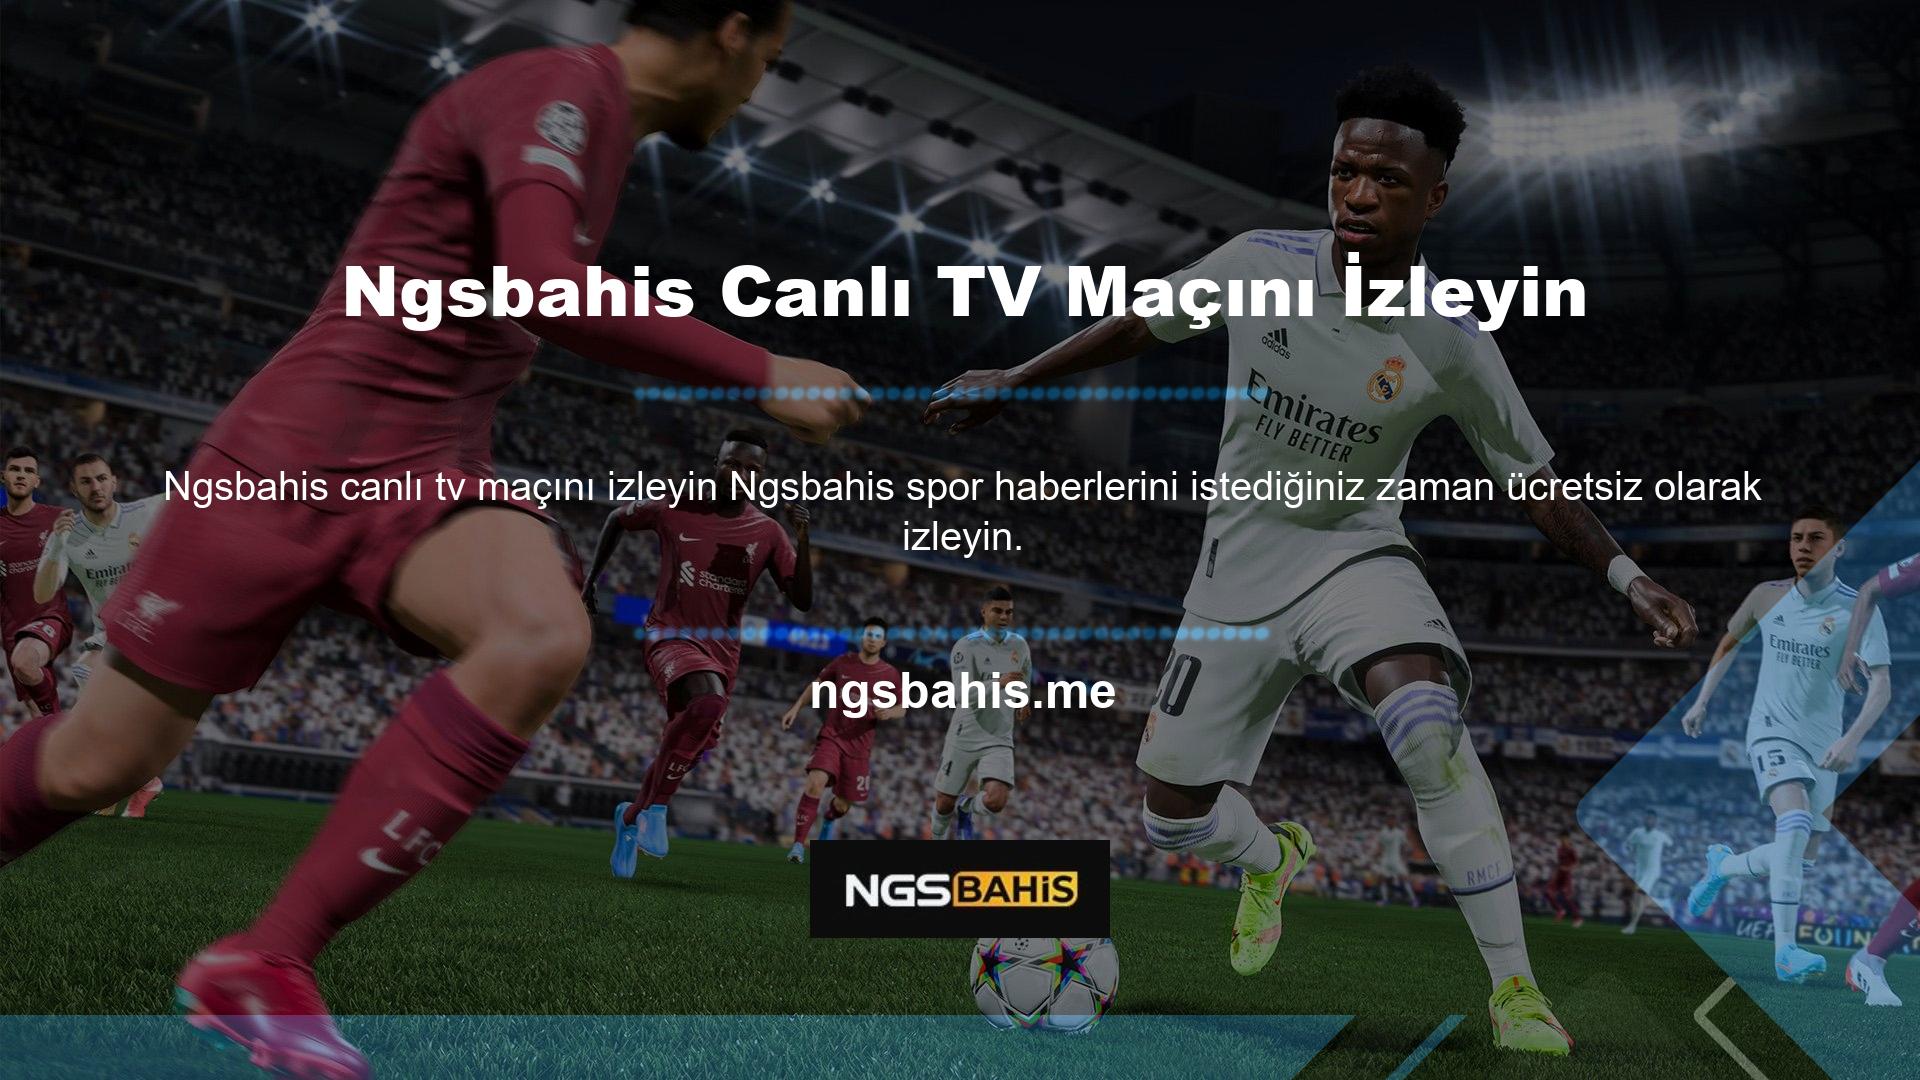 Canlı maçları çevrimiçi izlemek için Ngsbahis TV Canlı Maç Canlı Ücretsiz İzle bağlantısına tıklamanız yeterlidir